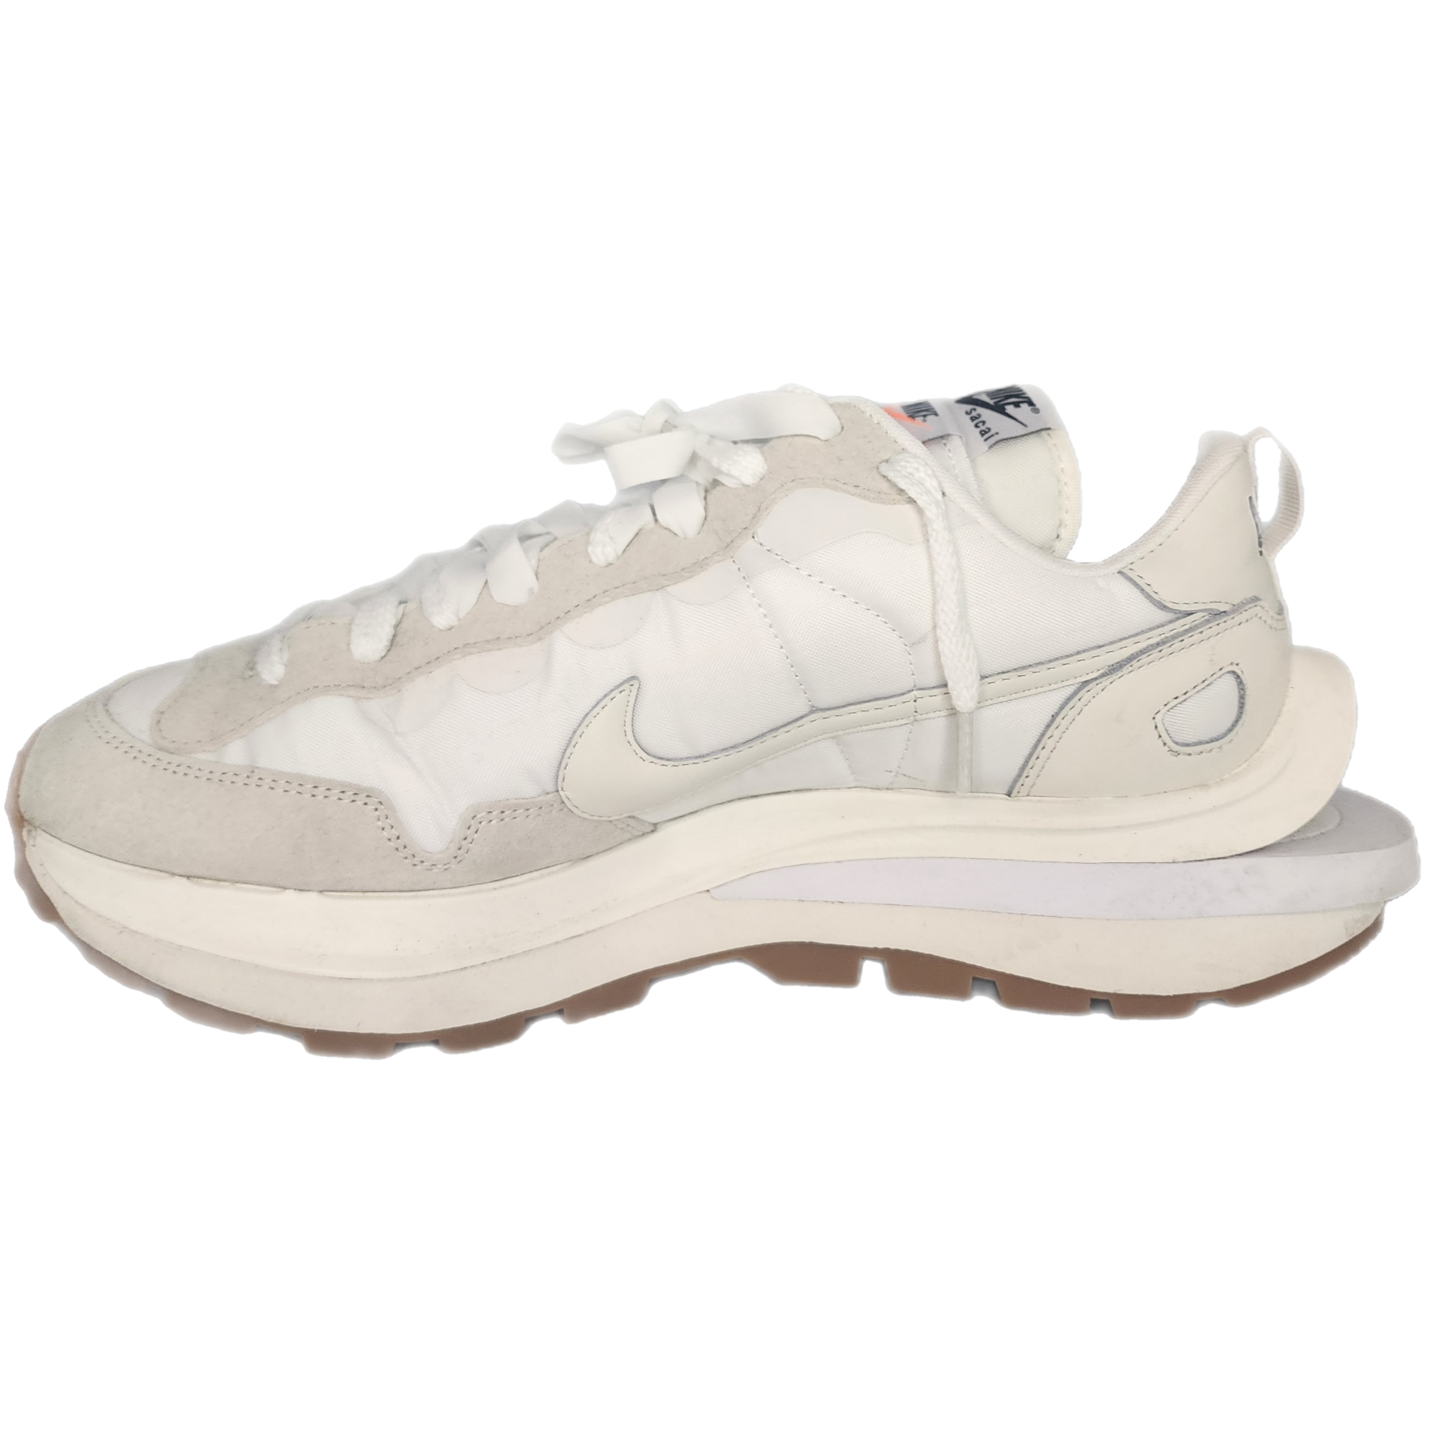 Nike -"Sacai Vaporwaffle White"- Size 11.5